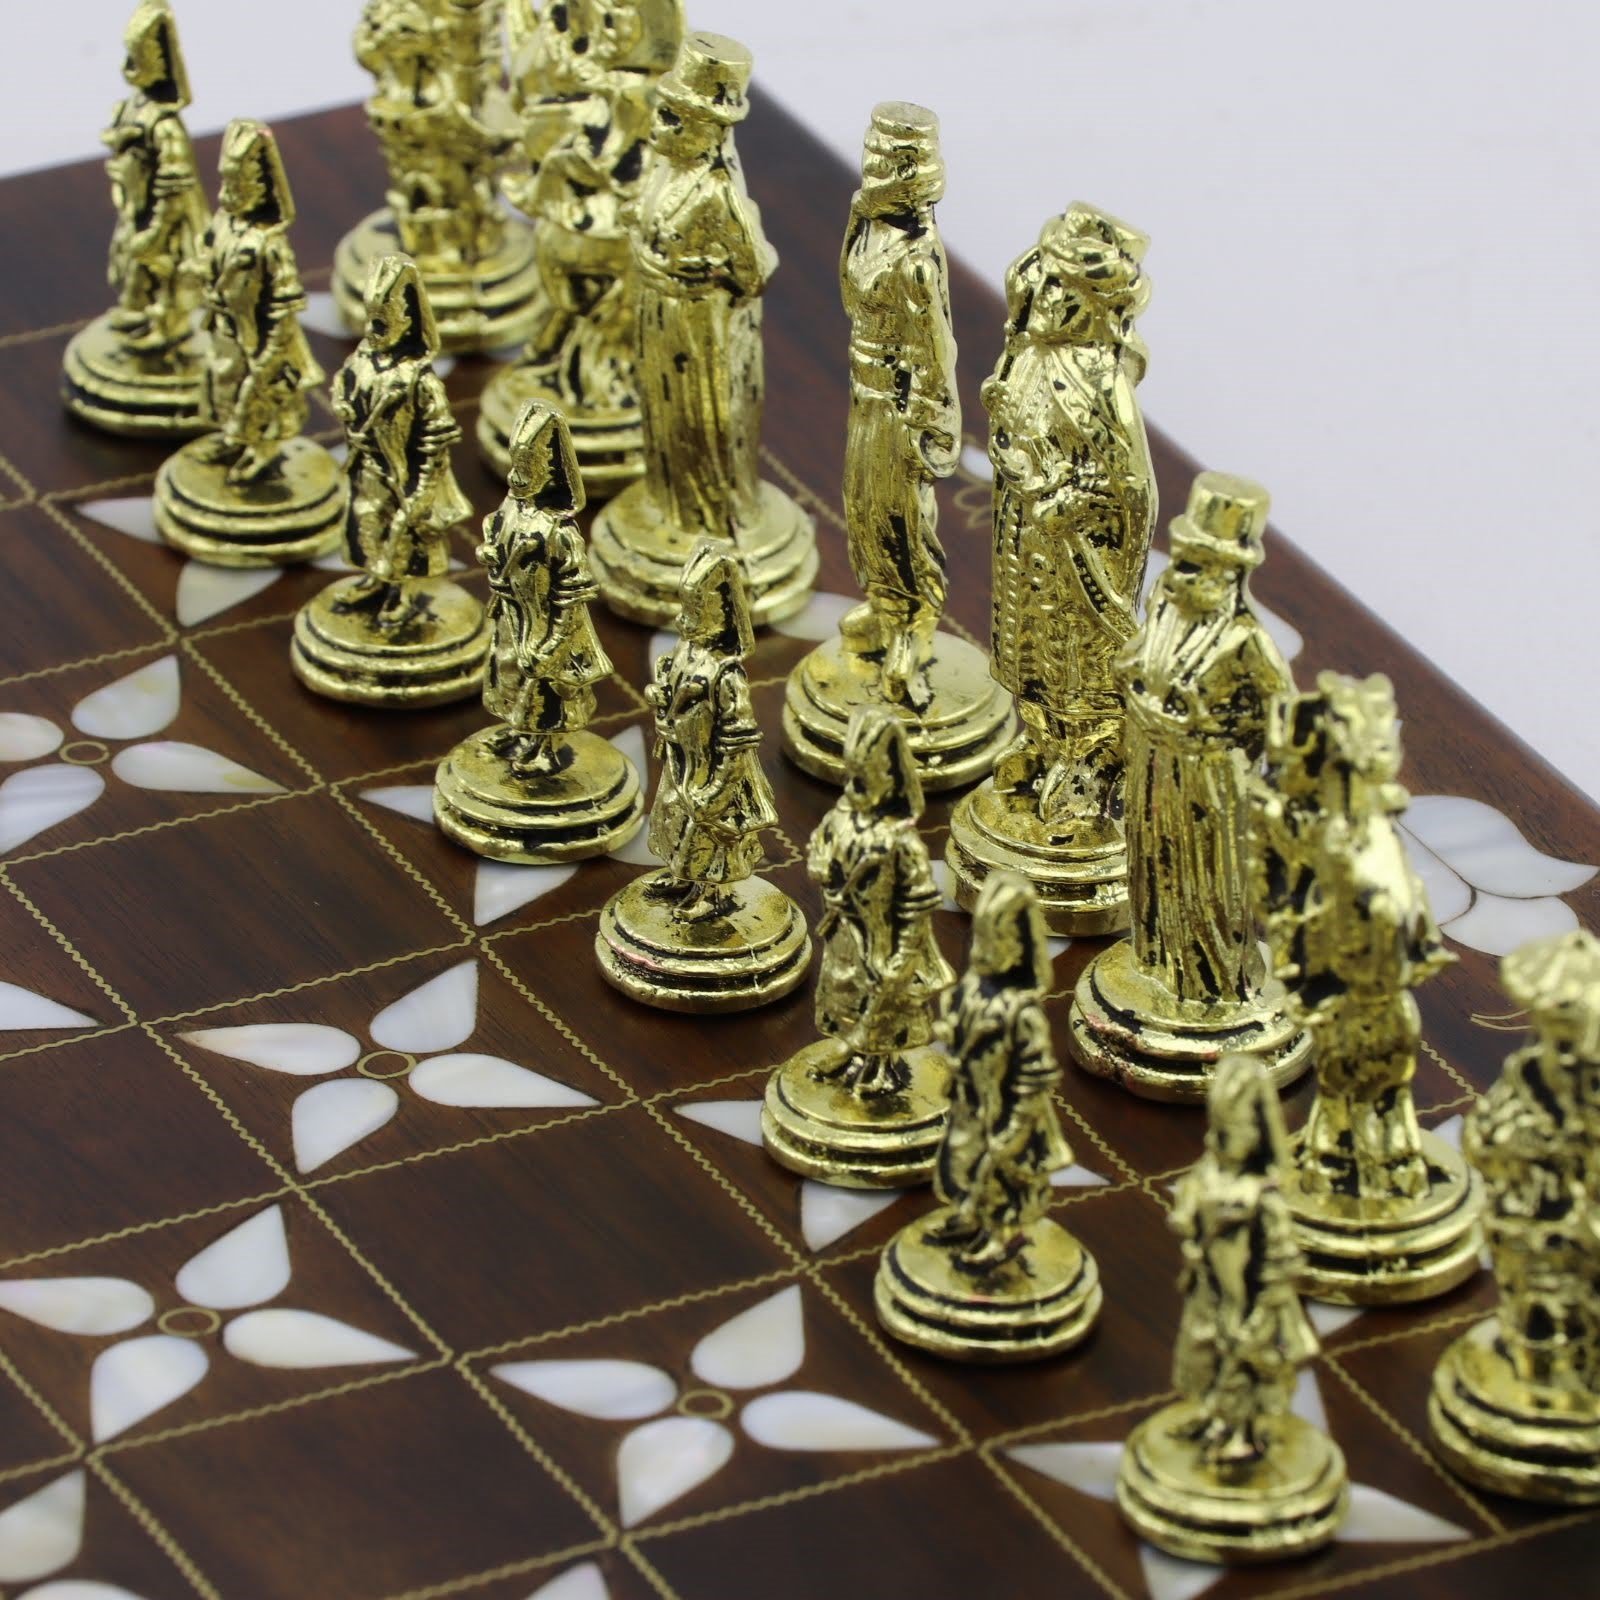 Tamamen el işçiliği ile hazırlanmış sedefli ahşap satranç takımı